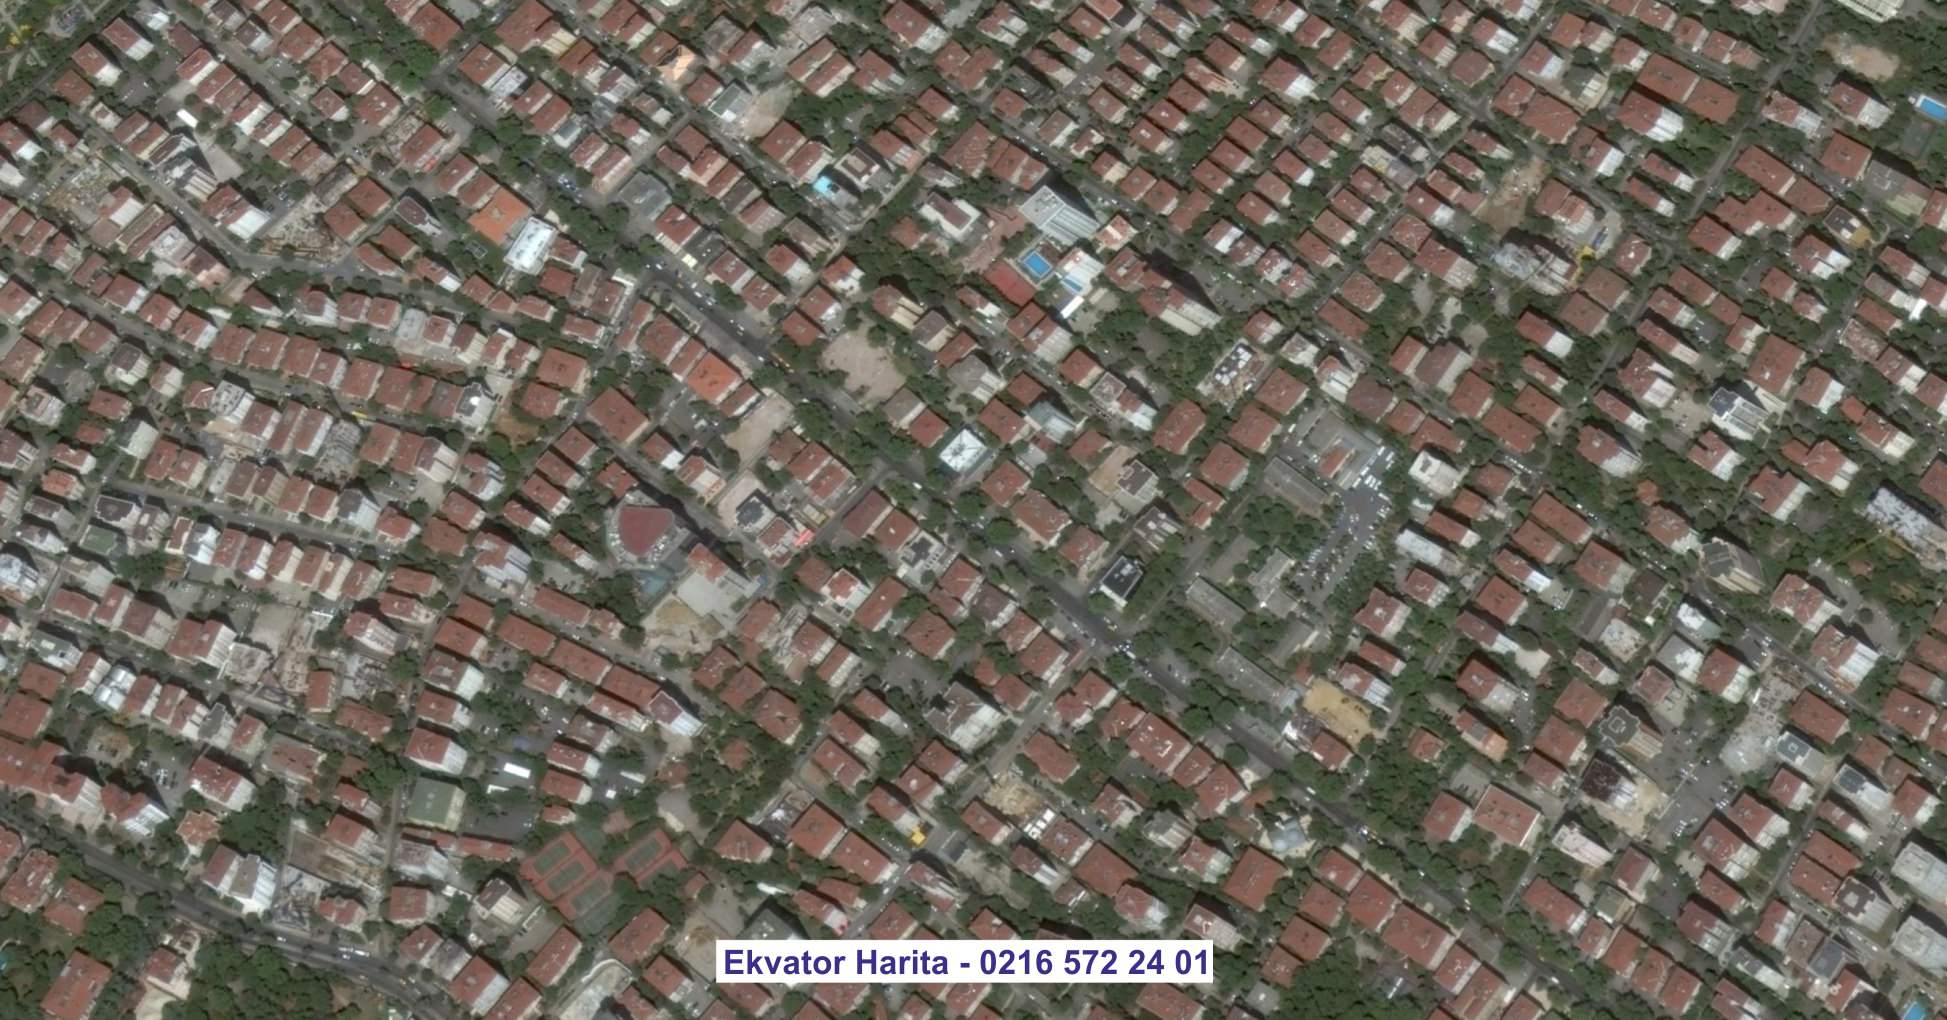 Kerkük Uydu Görüntüsü Örnek Fotoğrafı